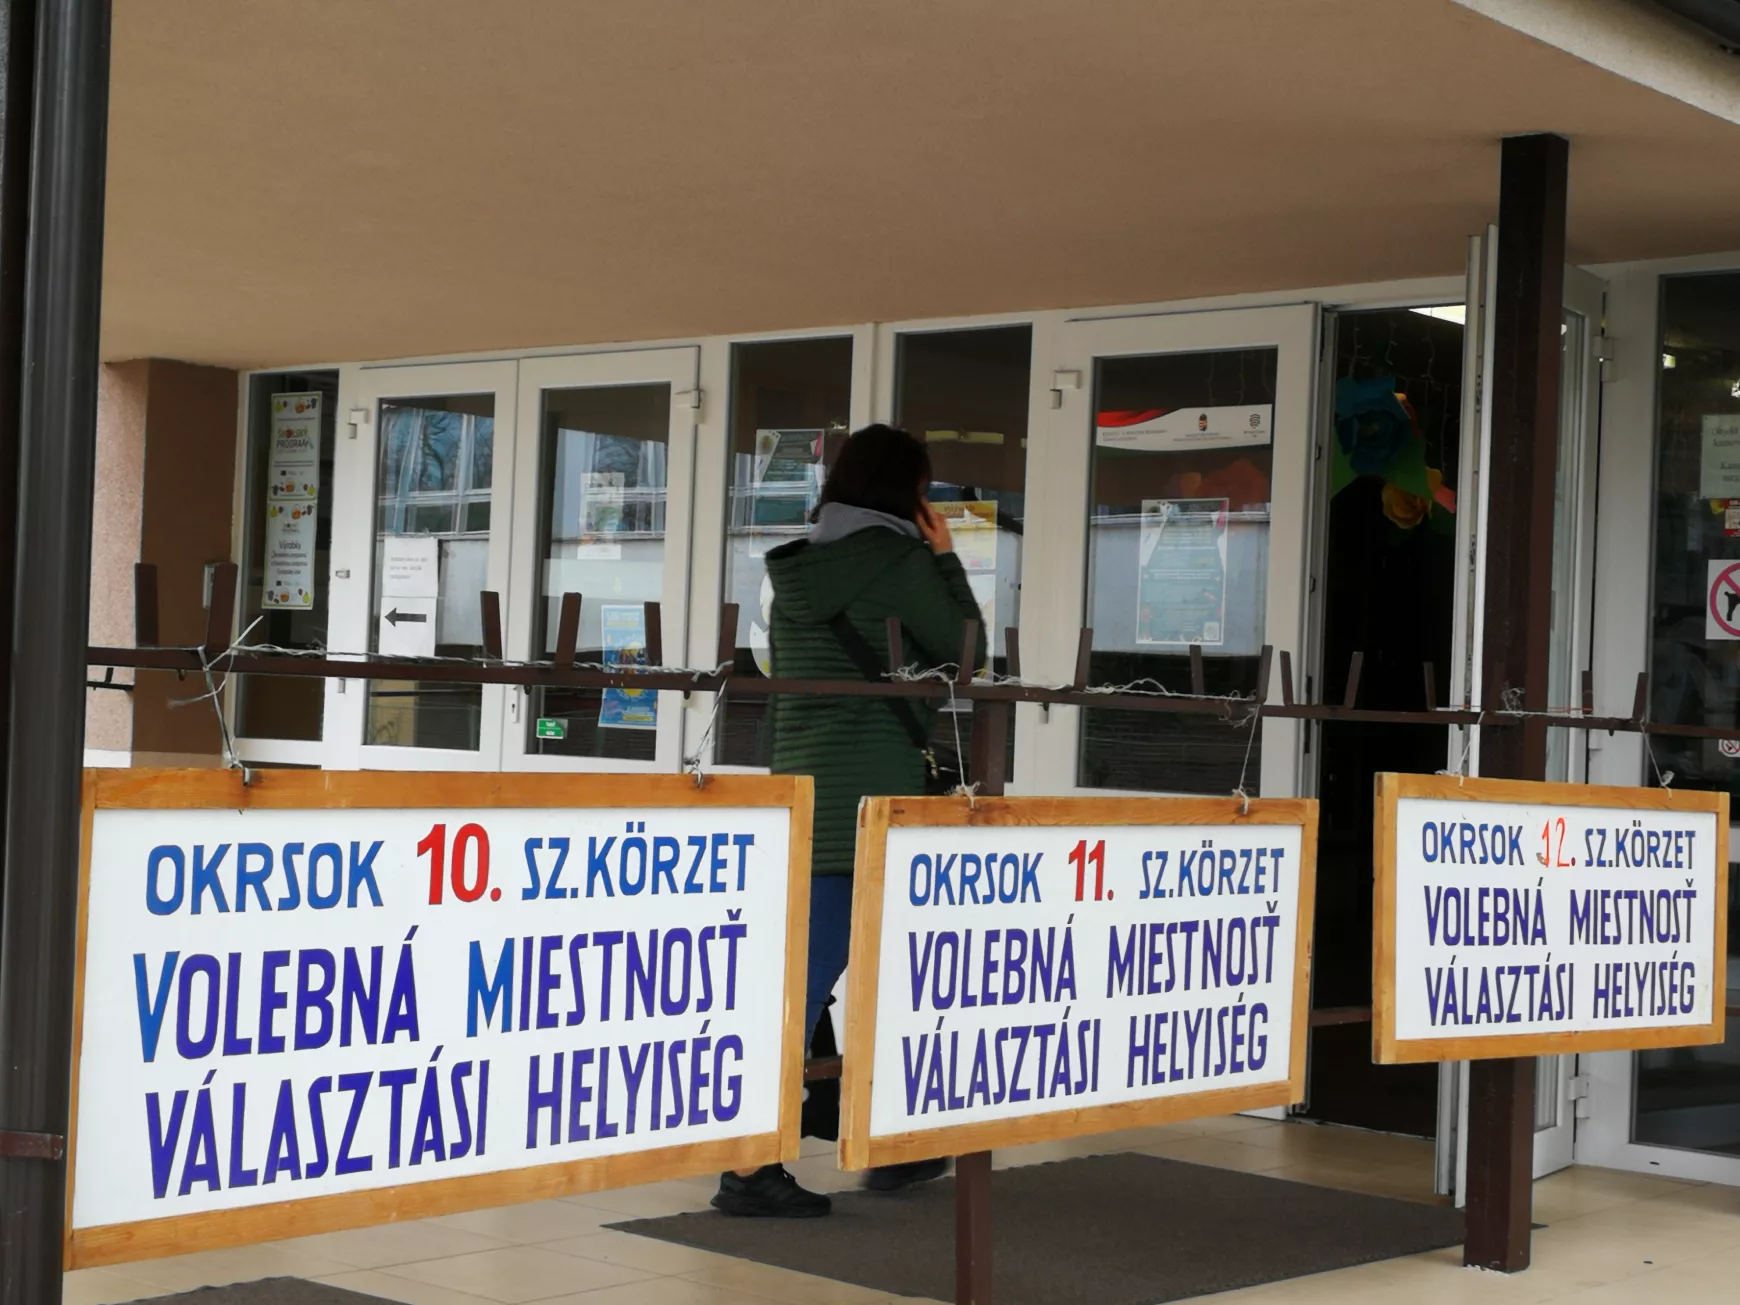 Félidőn túl a Komáromi járásban: megdöbbentően alacsony a választási részvétel